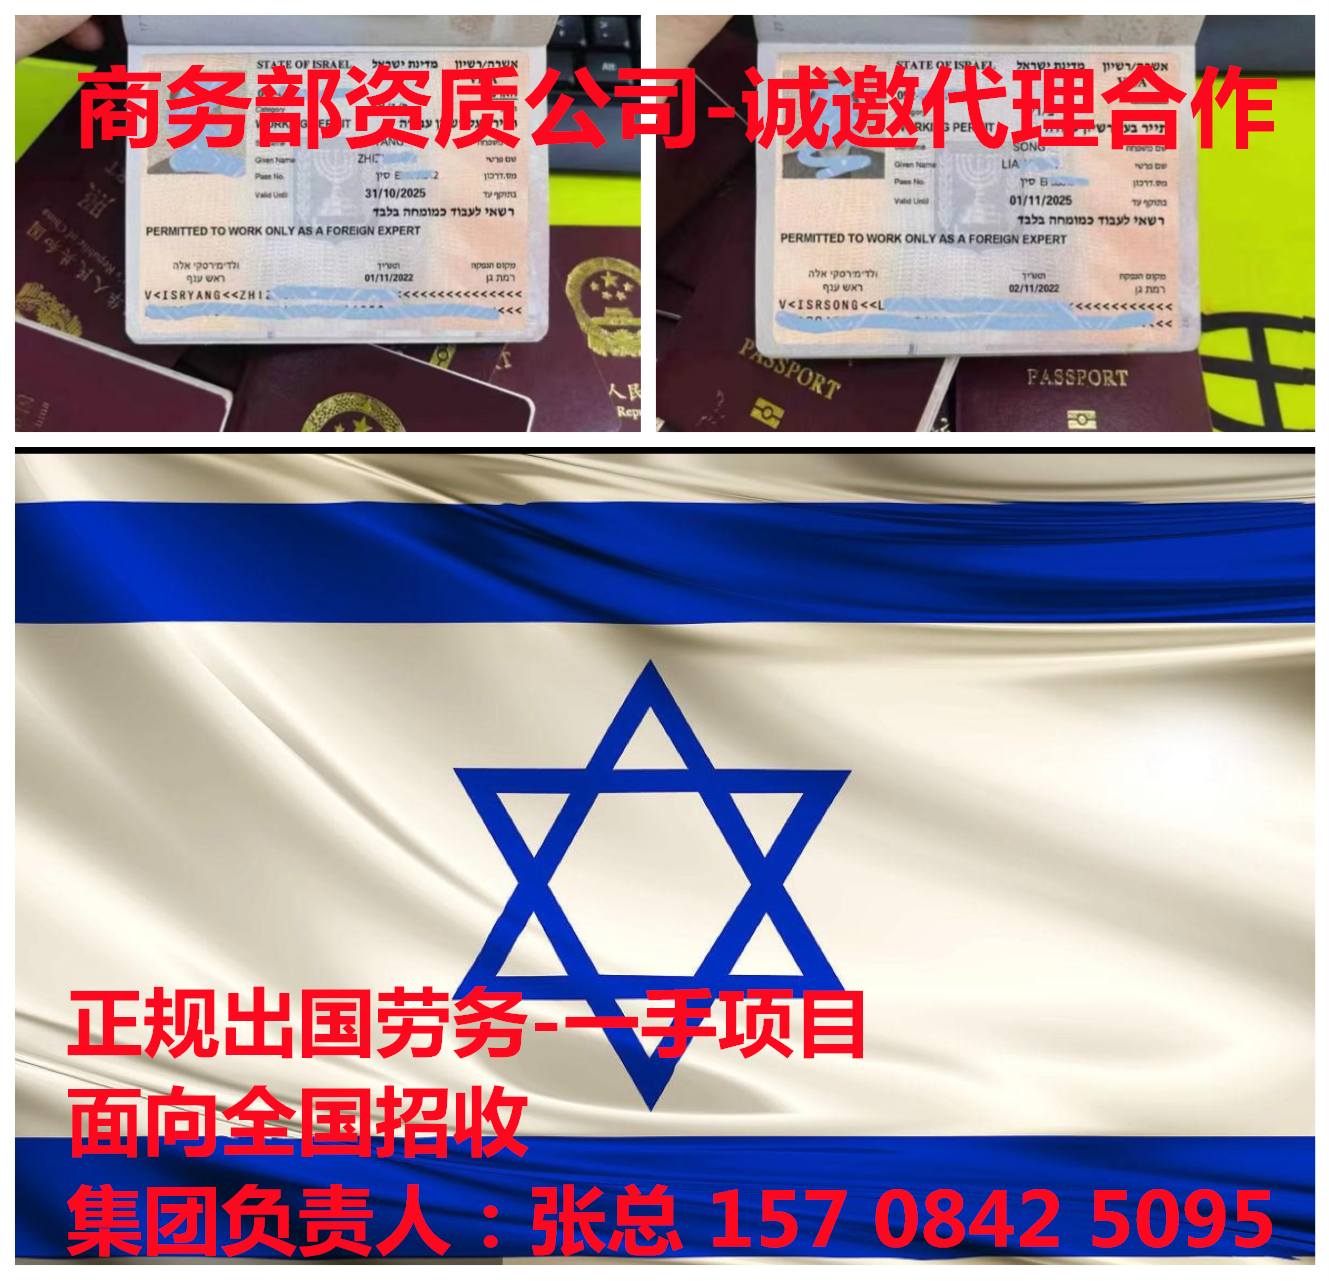 抚州海聘出国劳务公司-以色列零费用-招库管员食堂厨师月入1.8-4万